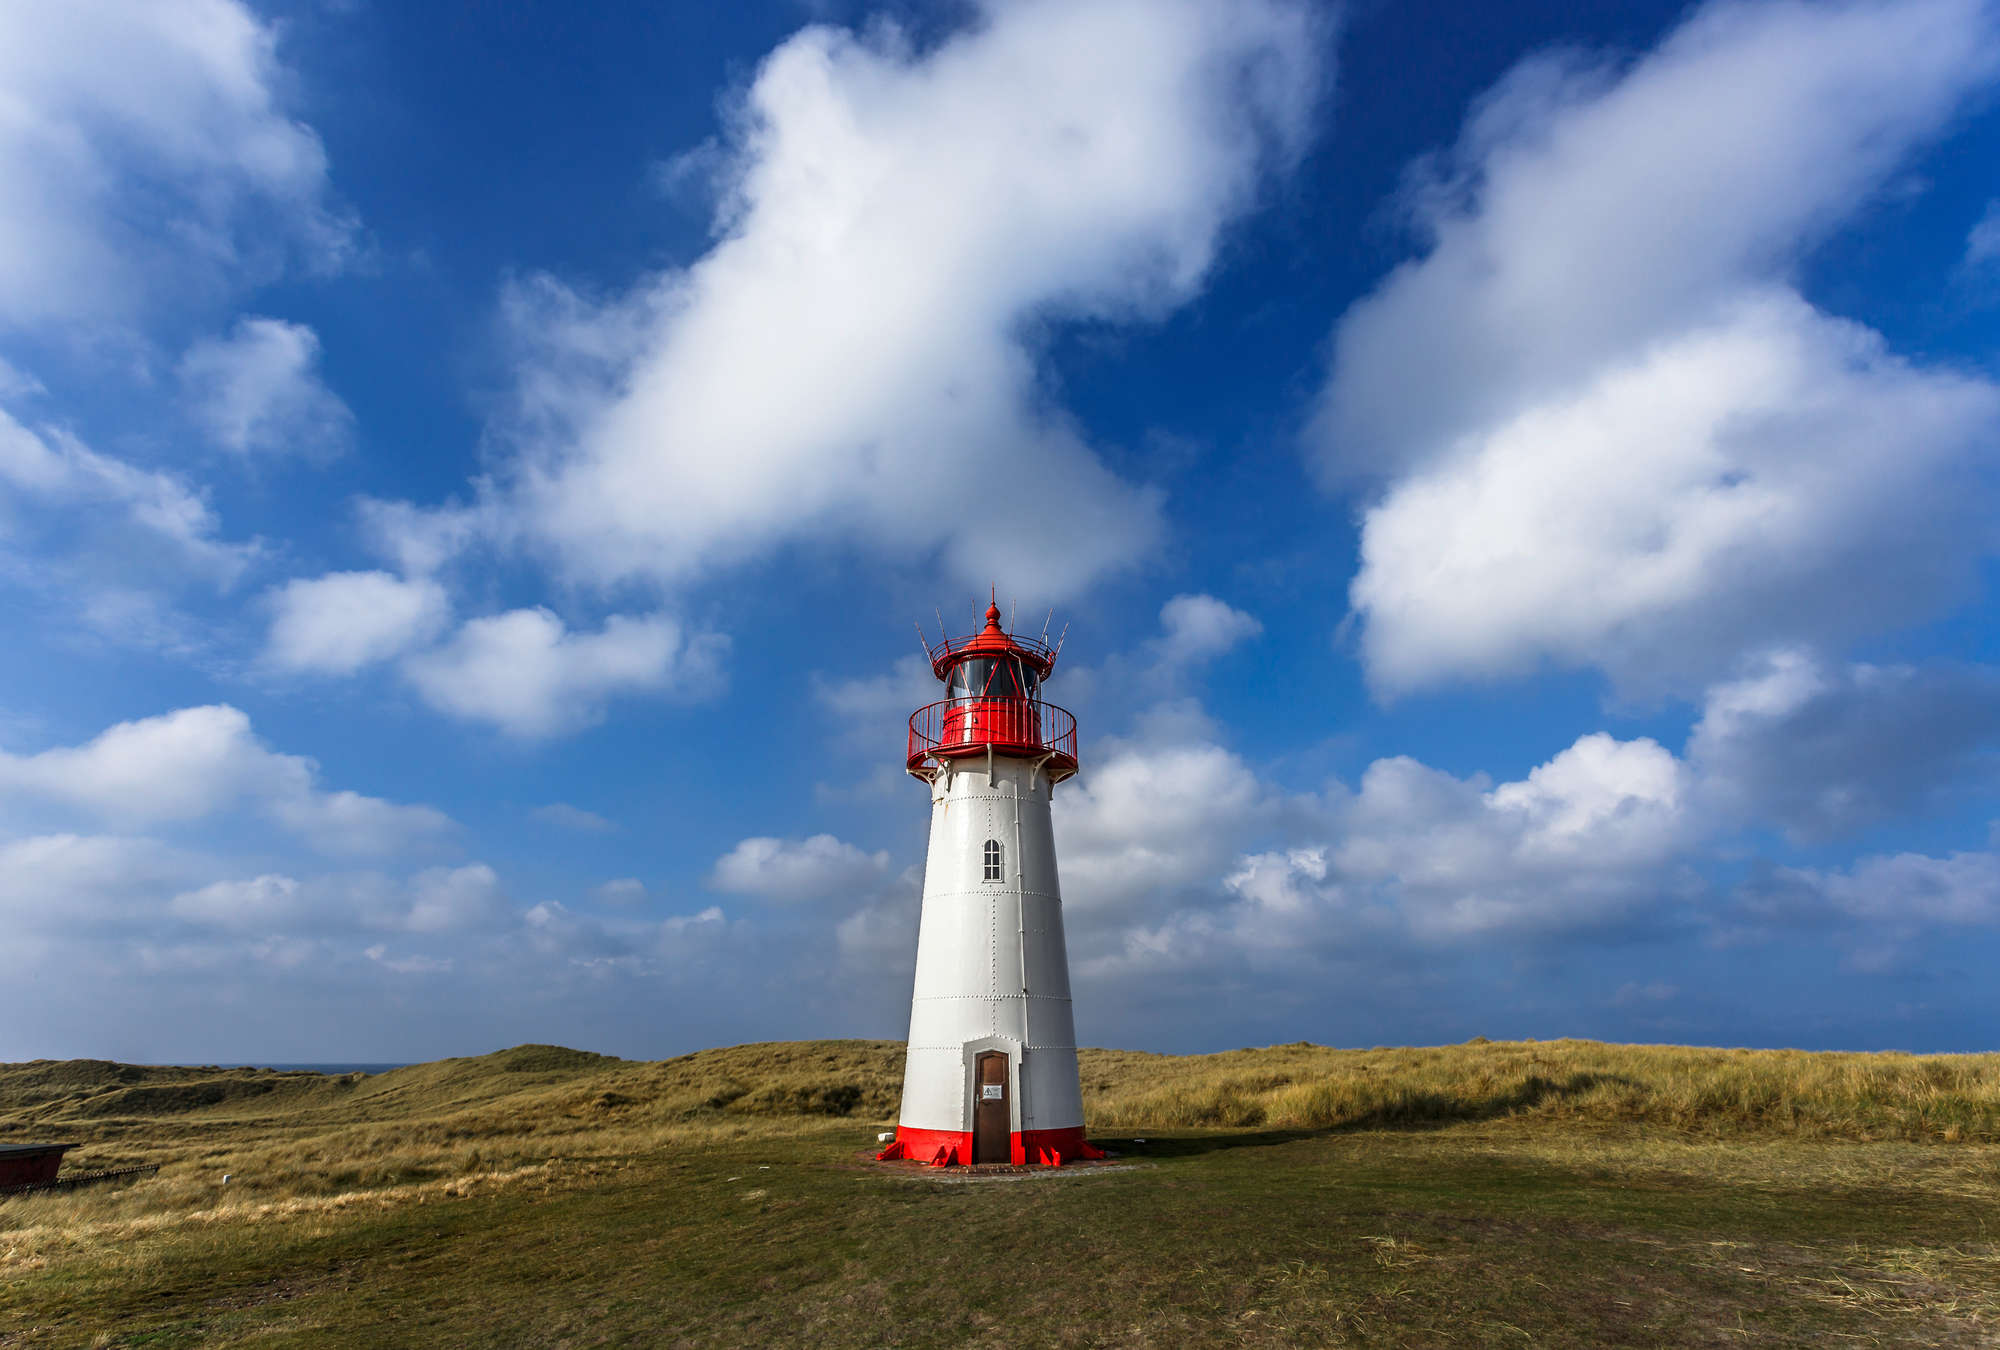             Fototapete Leuchtturm – Malerische Küstenlandschaft
        